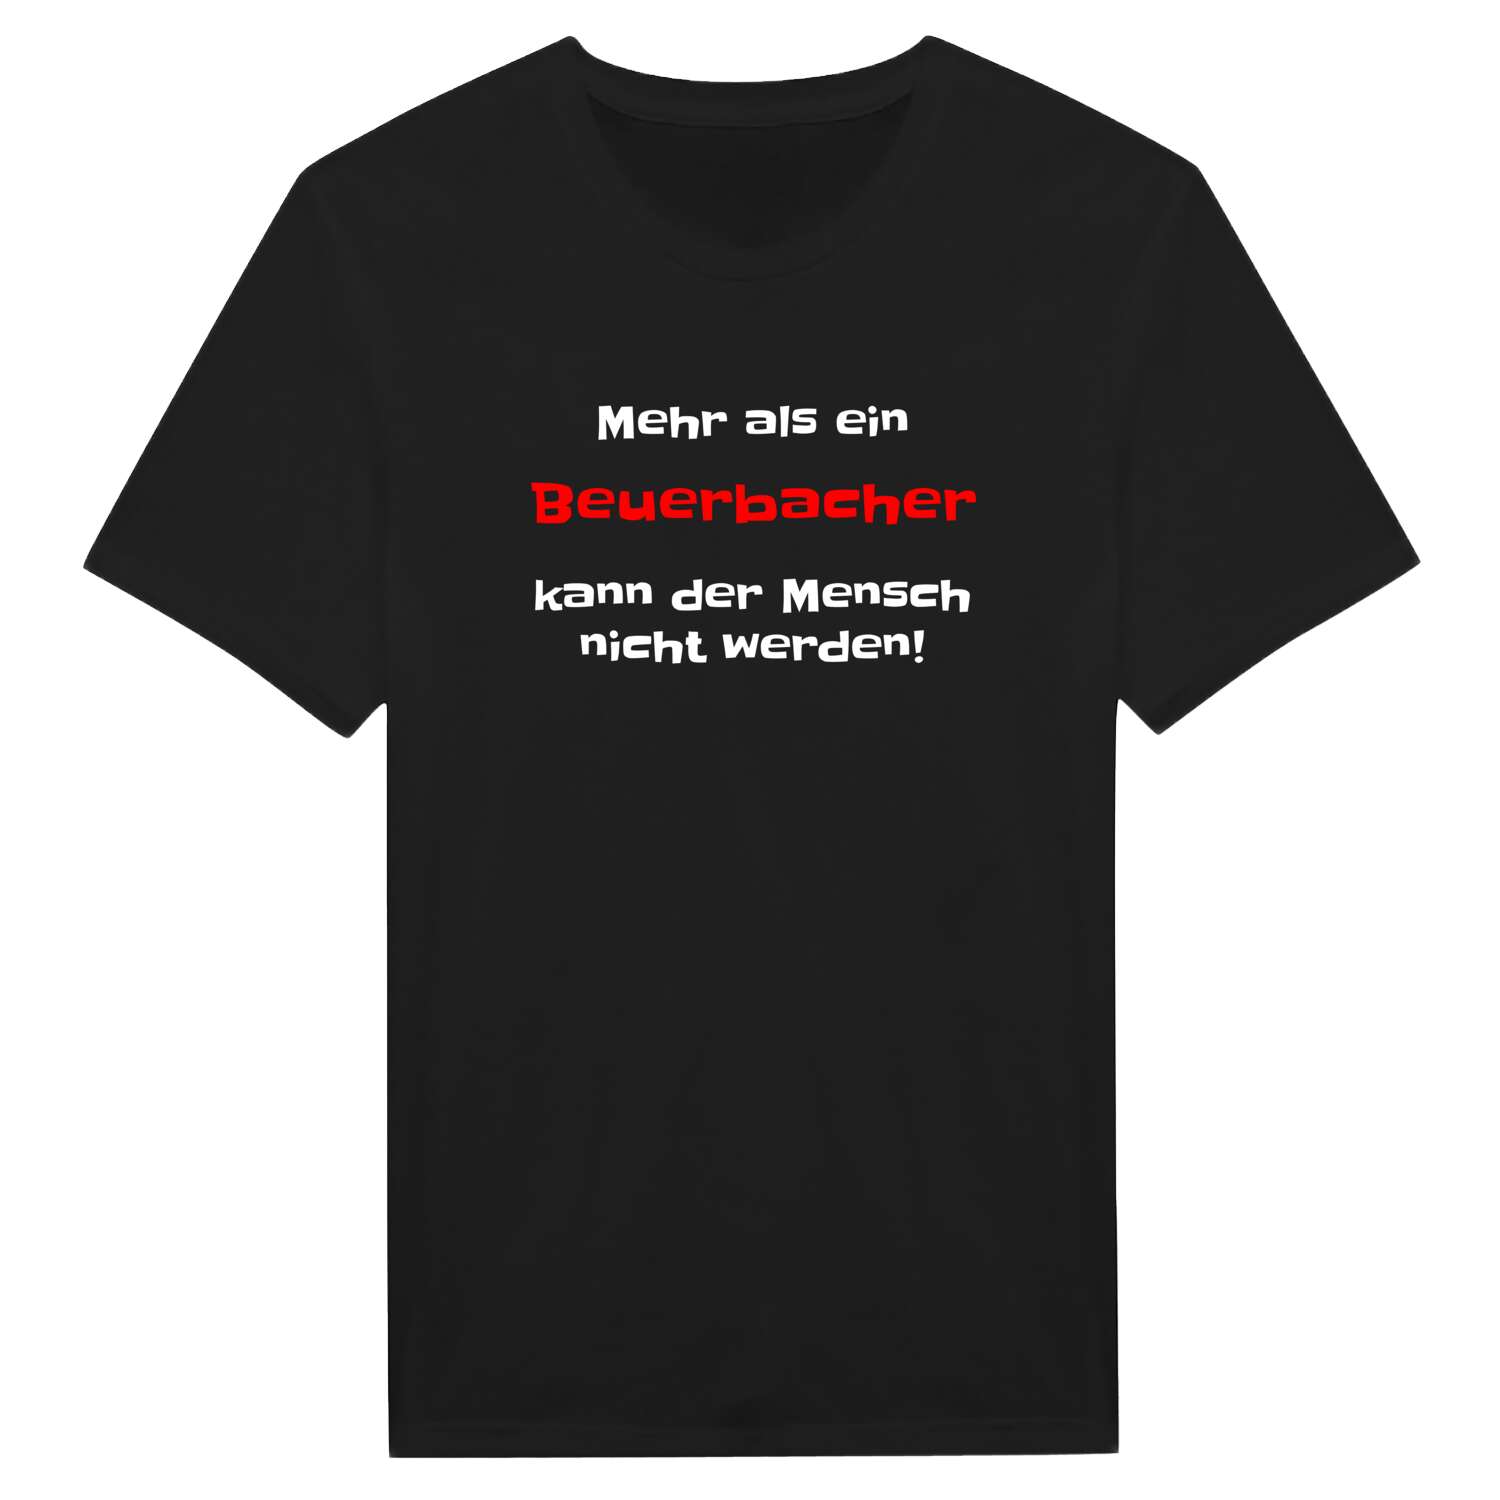 Beuerbach T-Shirt »Mehr als ein«